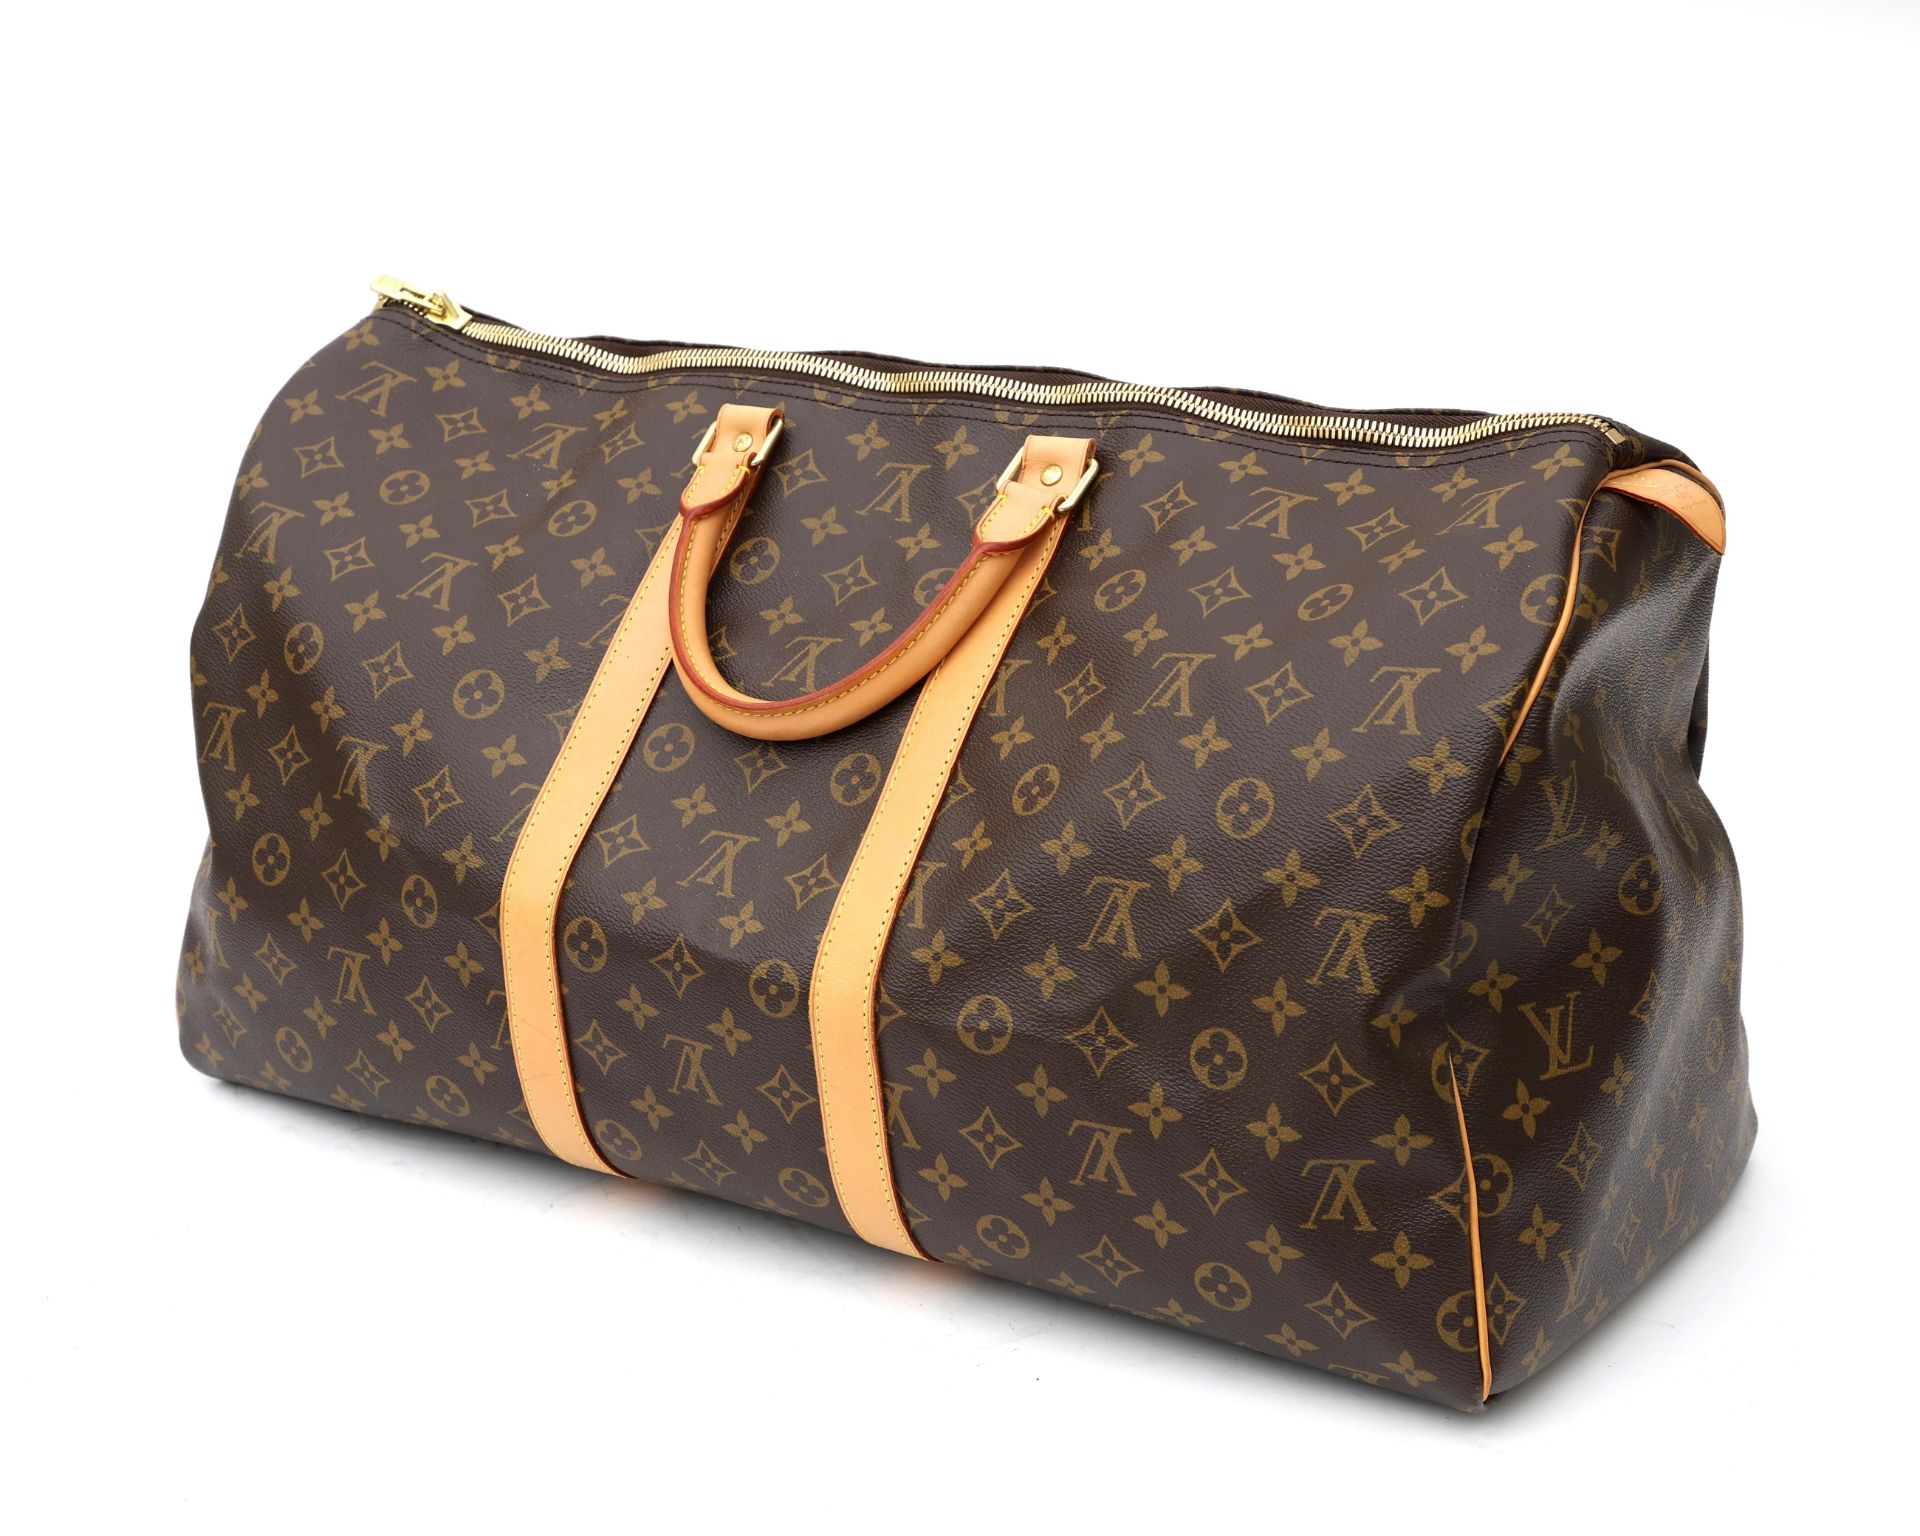 An original vintage Louis Vuitton travel bag, model Keepall 55 - Bild 3 aus 13